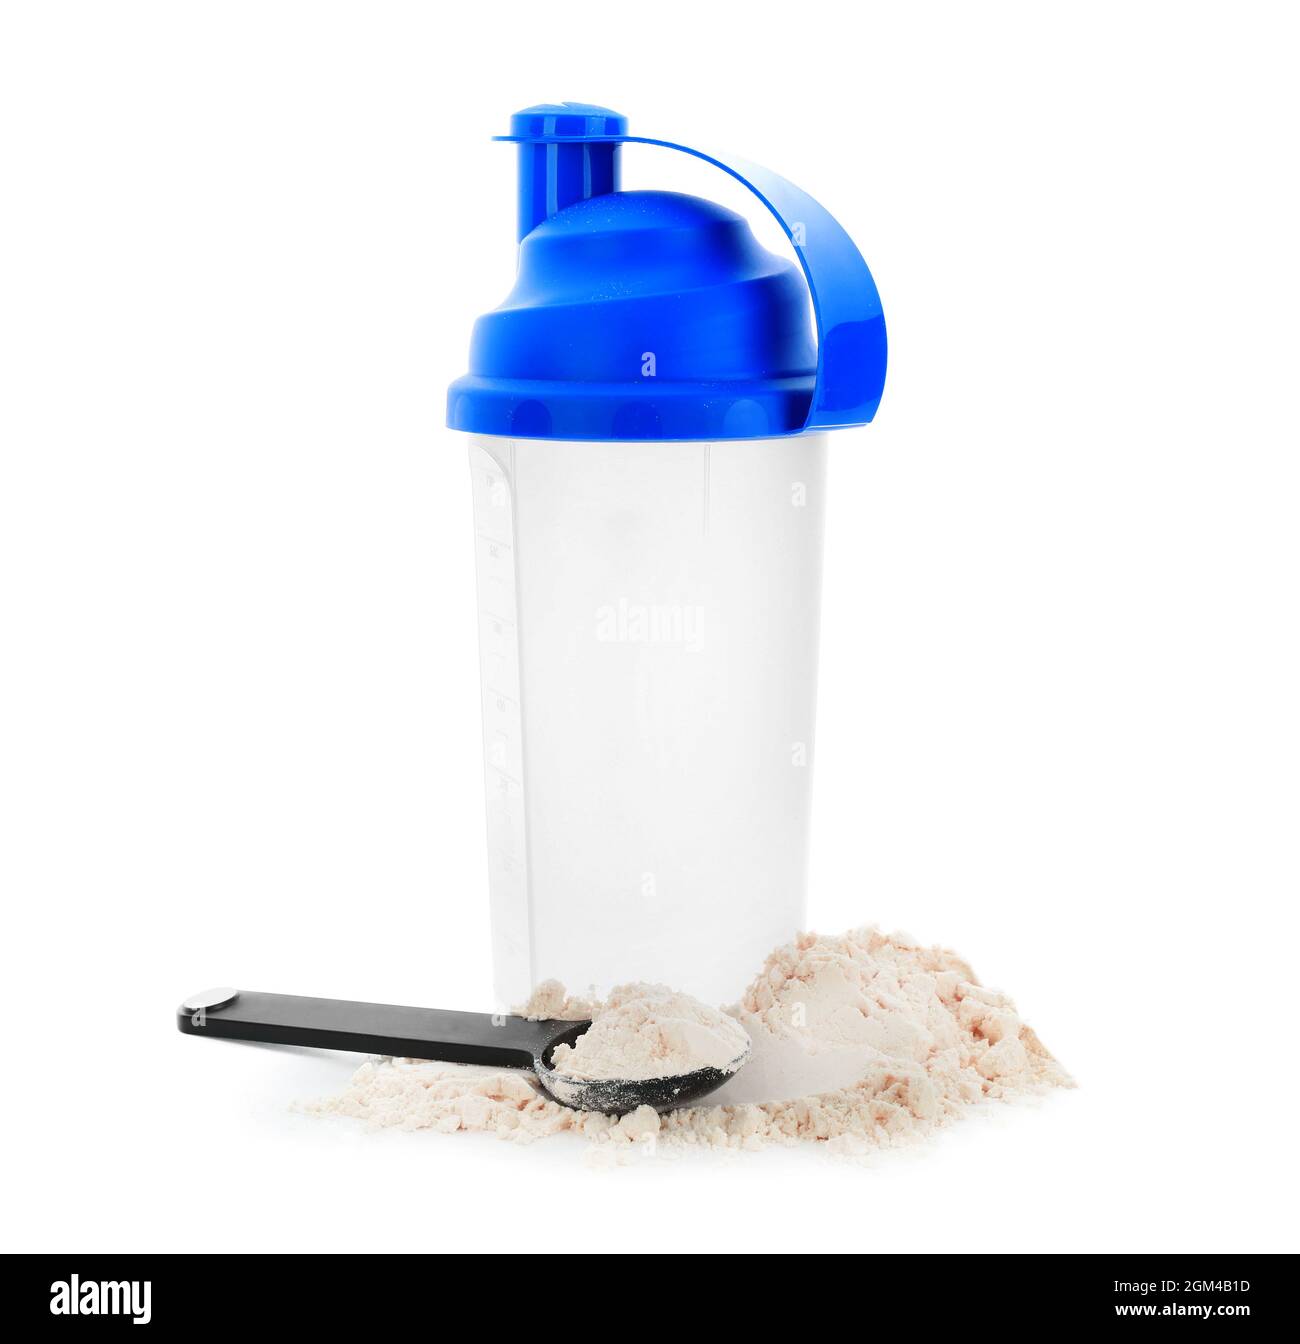 Protein Shake und Löffel mit Proteinpulver auf weißem Hintergrund  Stockfotografie - Alamy